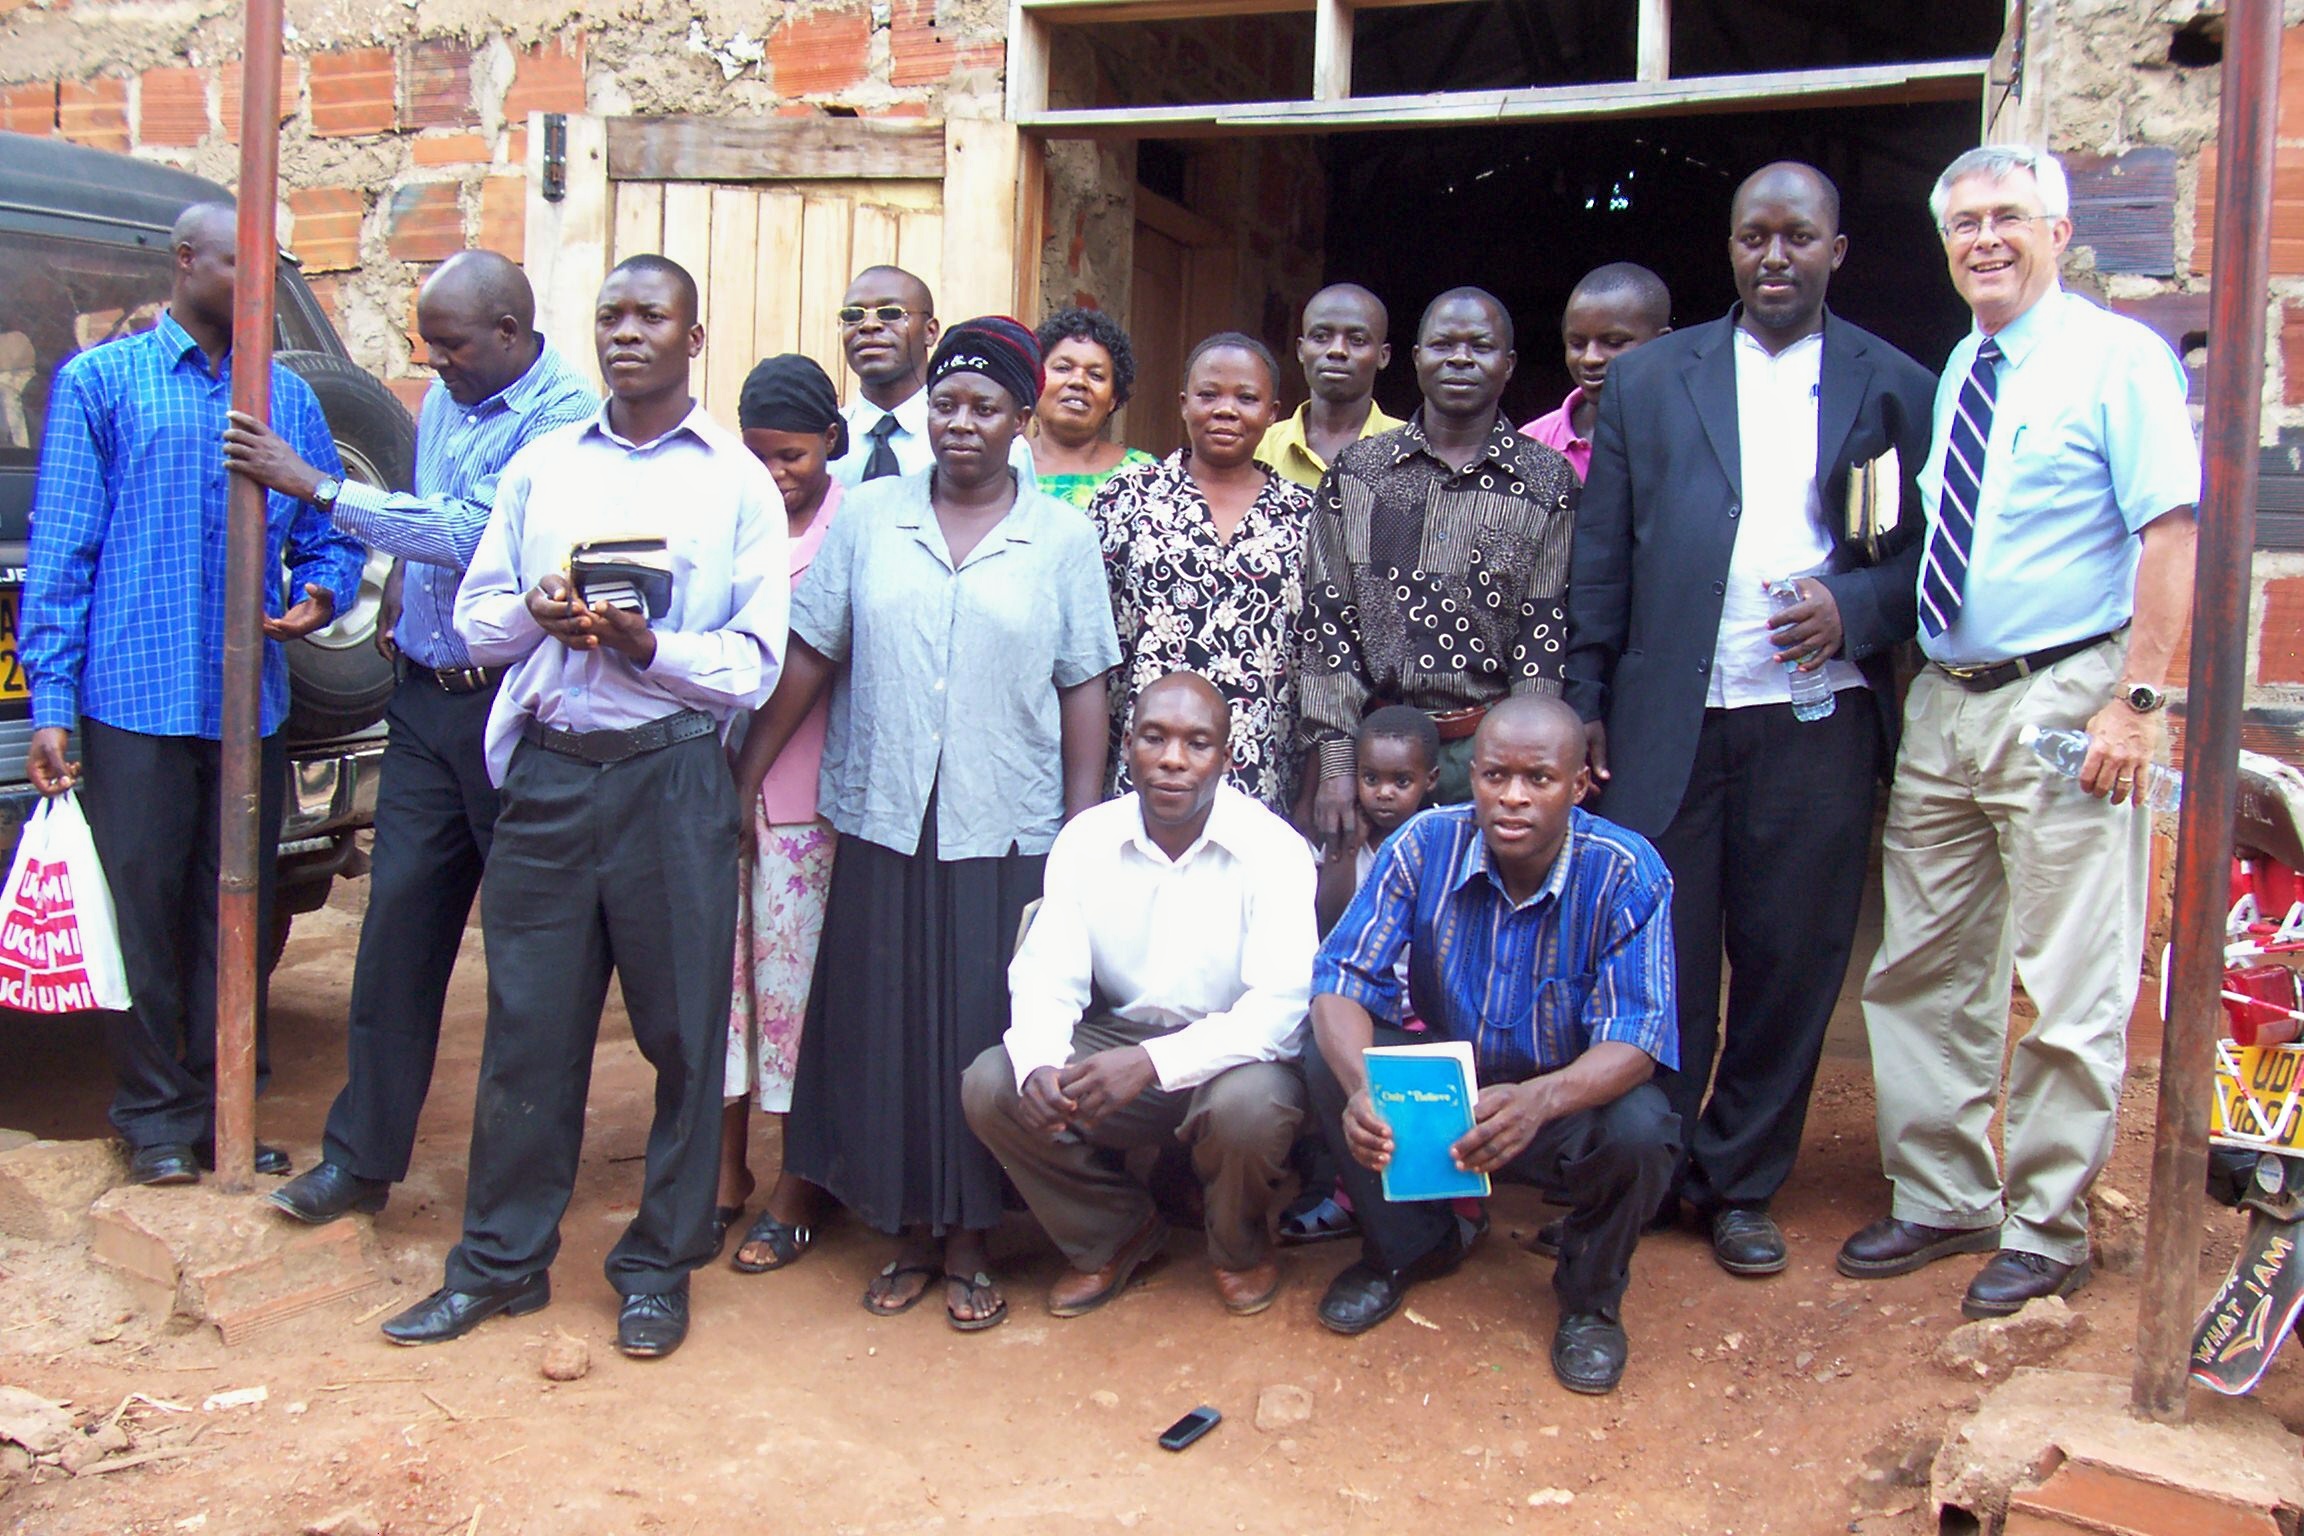 Uganda Trip Report – June 2010